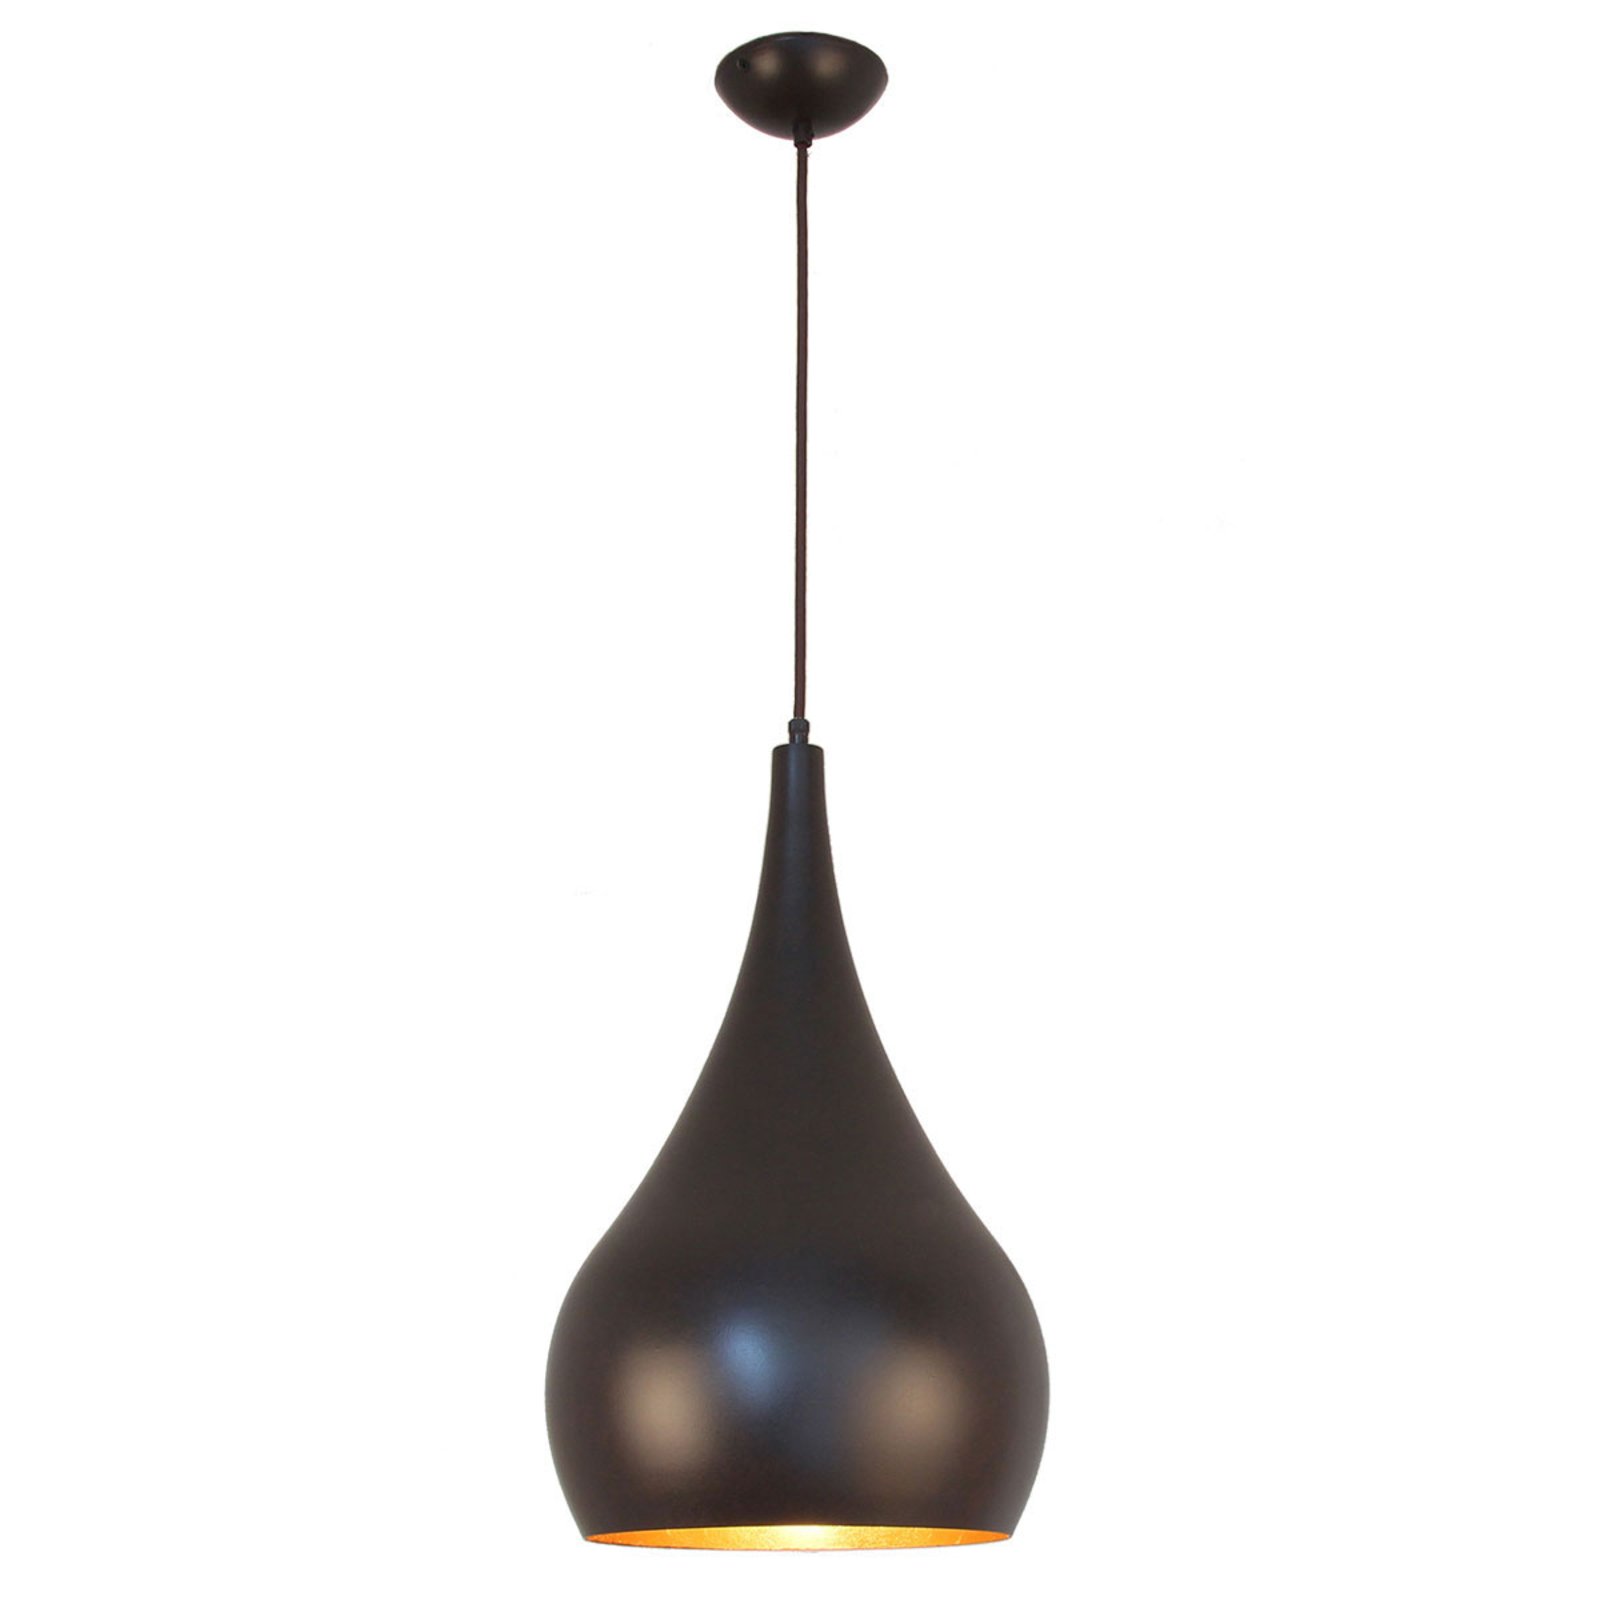 Menzel Solo hængelampe løgformet, brun-sort, 30 cm